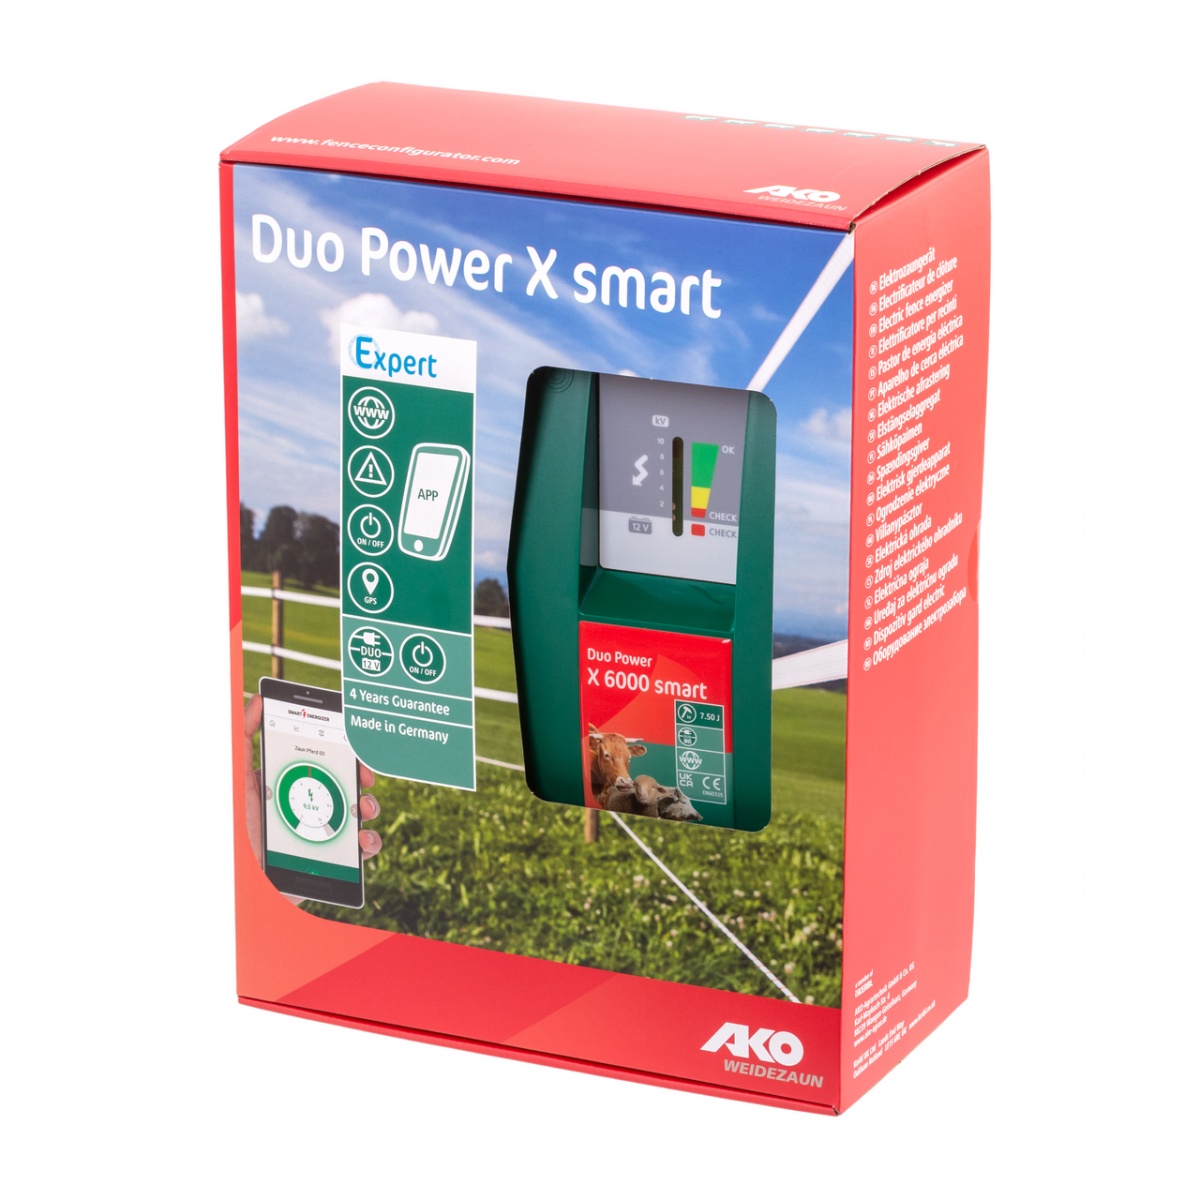 AKO Duo Power X 6000 Smart villanypásztor készülék, 230/12 V, 5 Joule